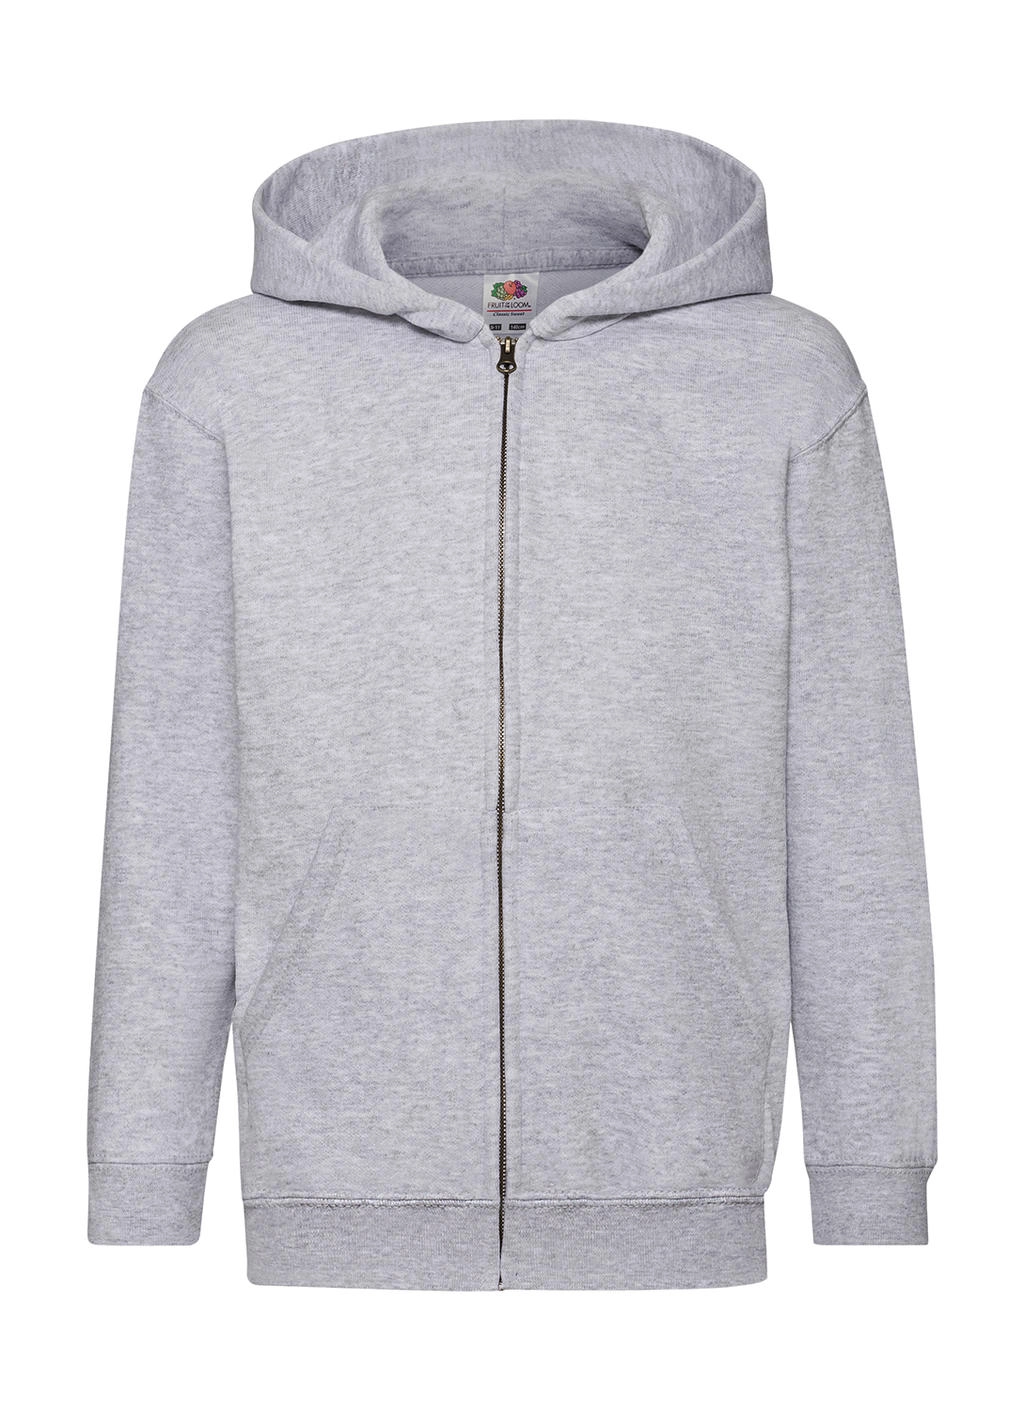 Kids` Classic Hooded Sweat Jacket zum Besticken und Bedrucken in der Farbe Heather Grey mit Ihren Logo, Schriftzug oder Motiv.